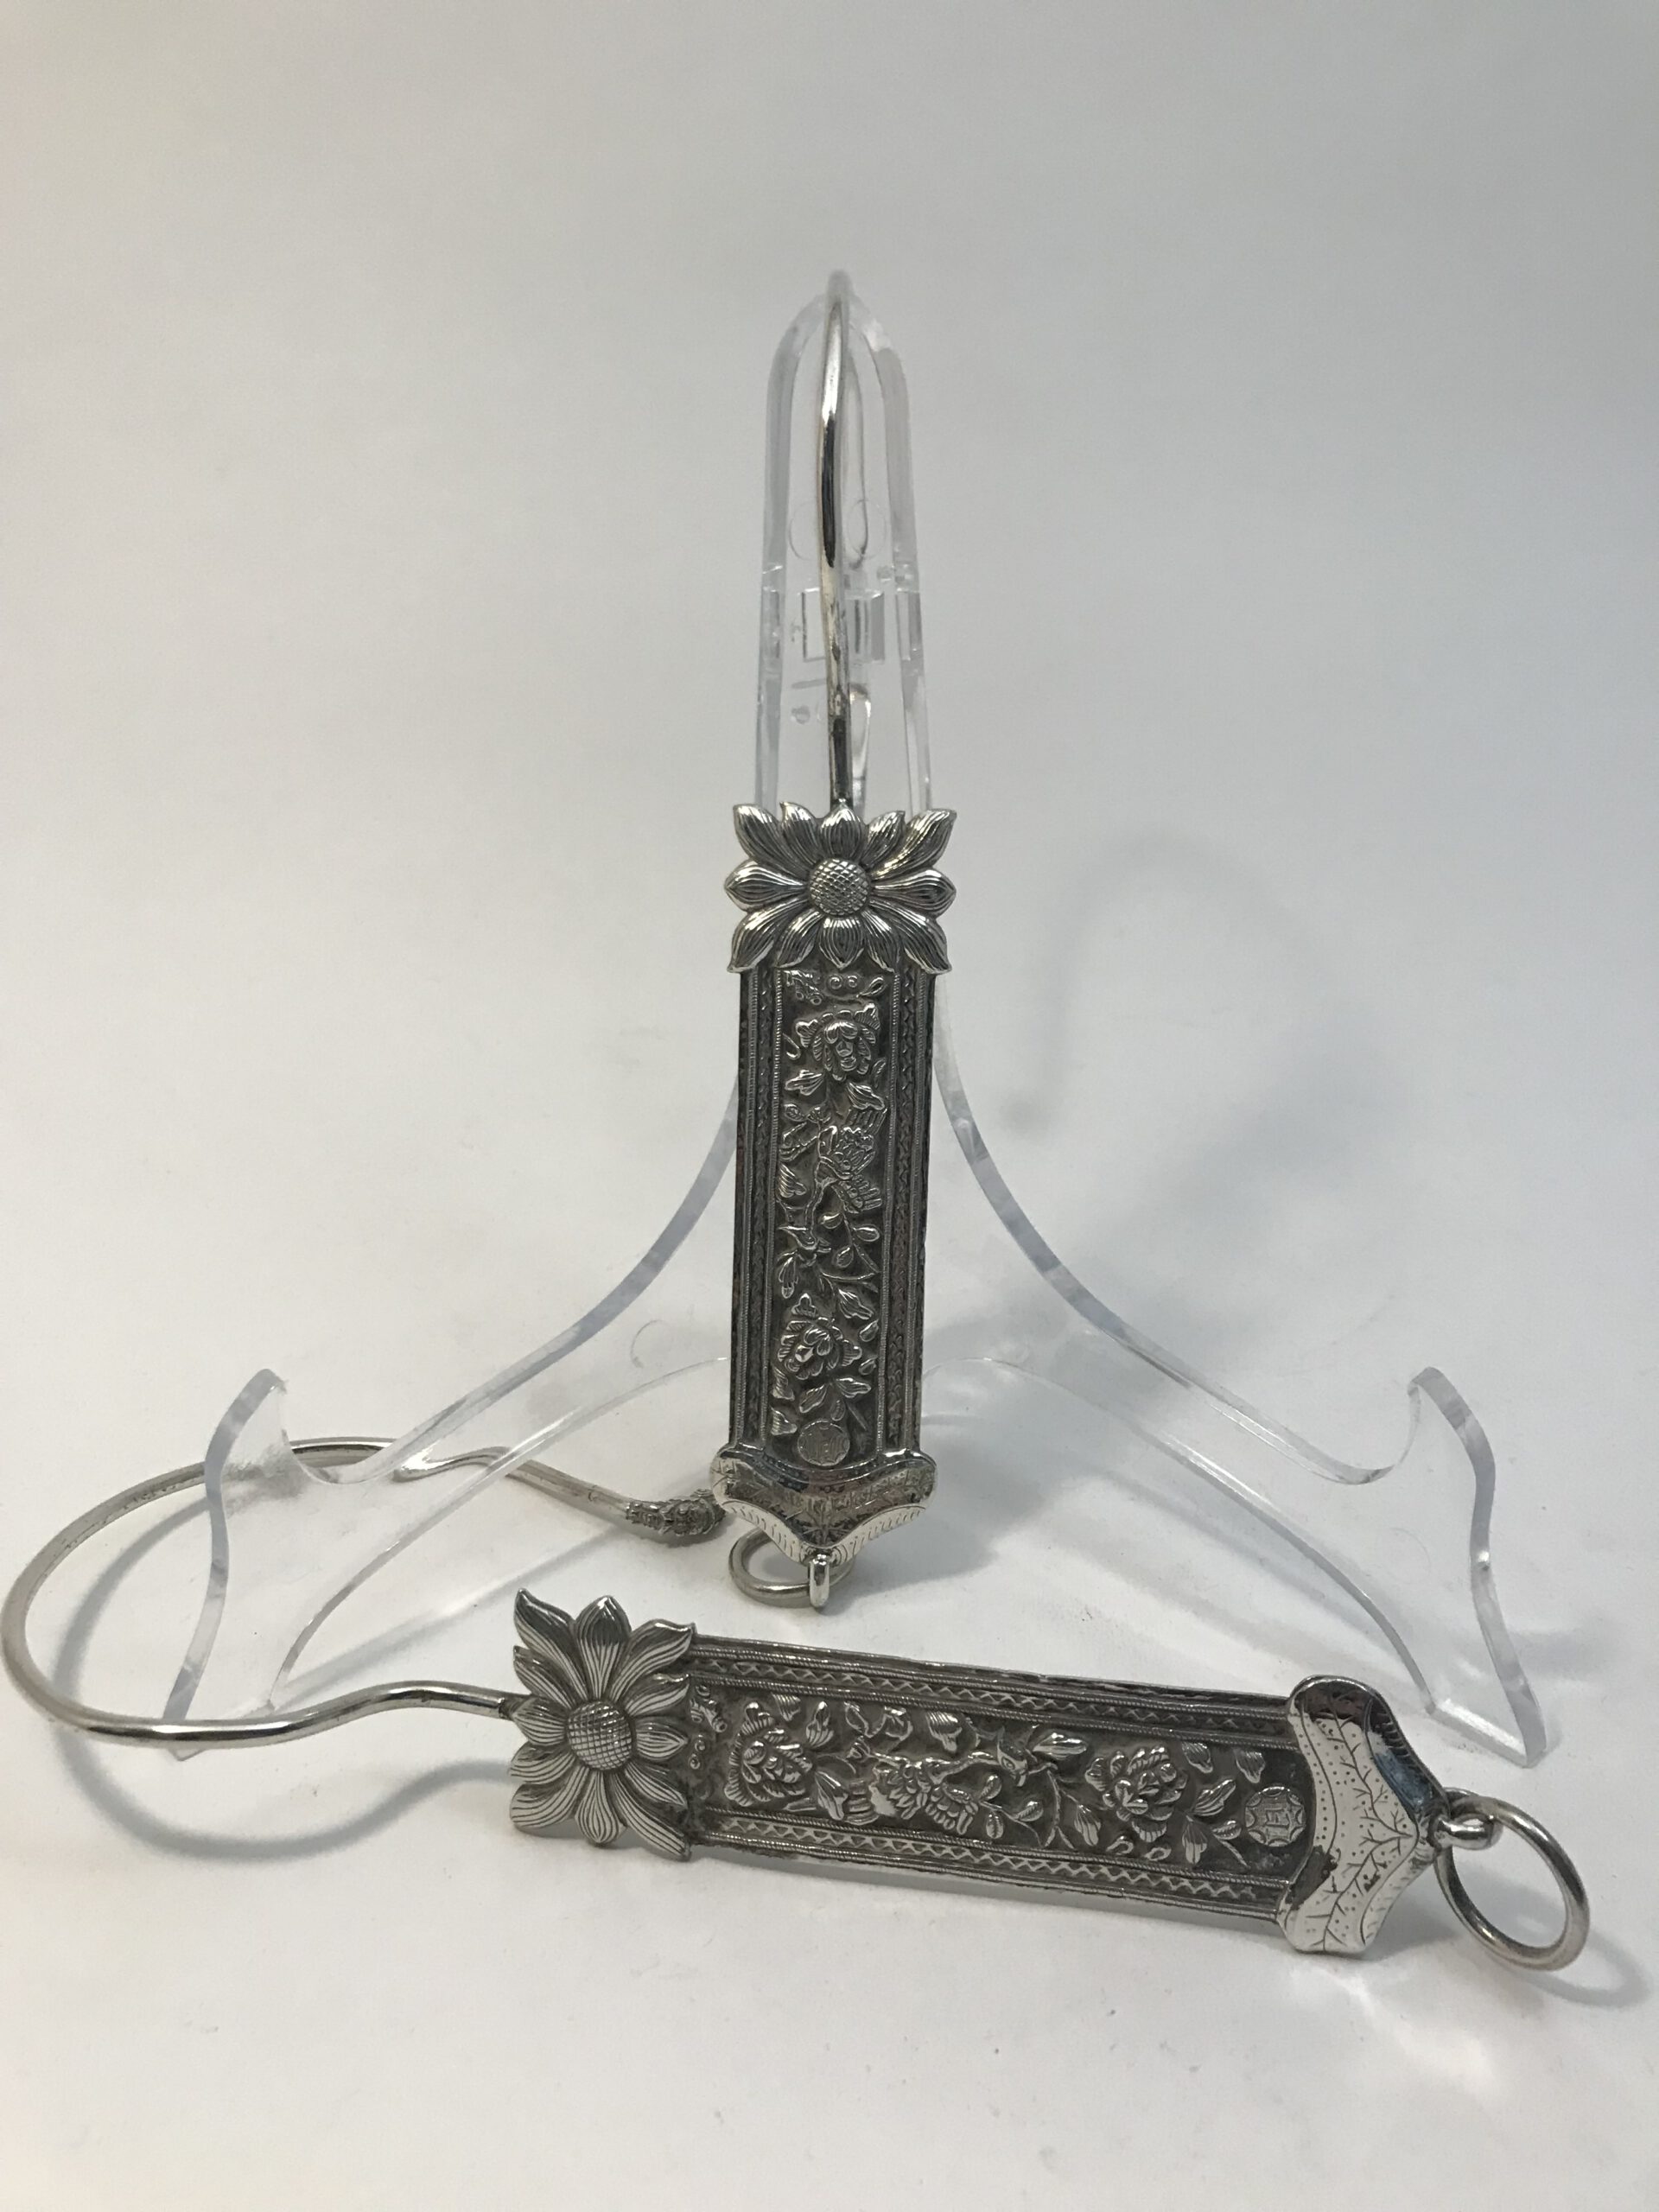 zilver set klamboehaken, djokja zilver indonesie, Haarlemsche zilversmederij K.H.Schermerhorn